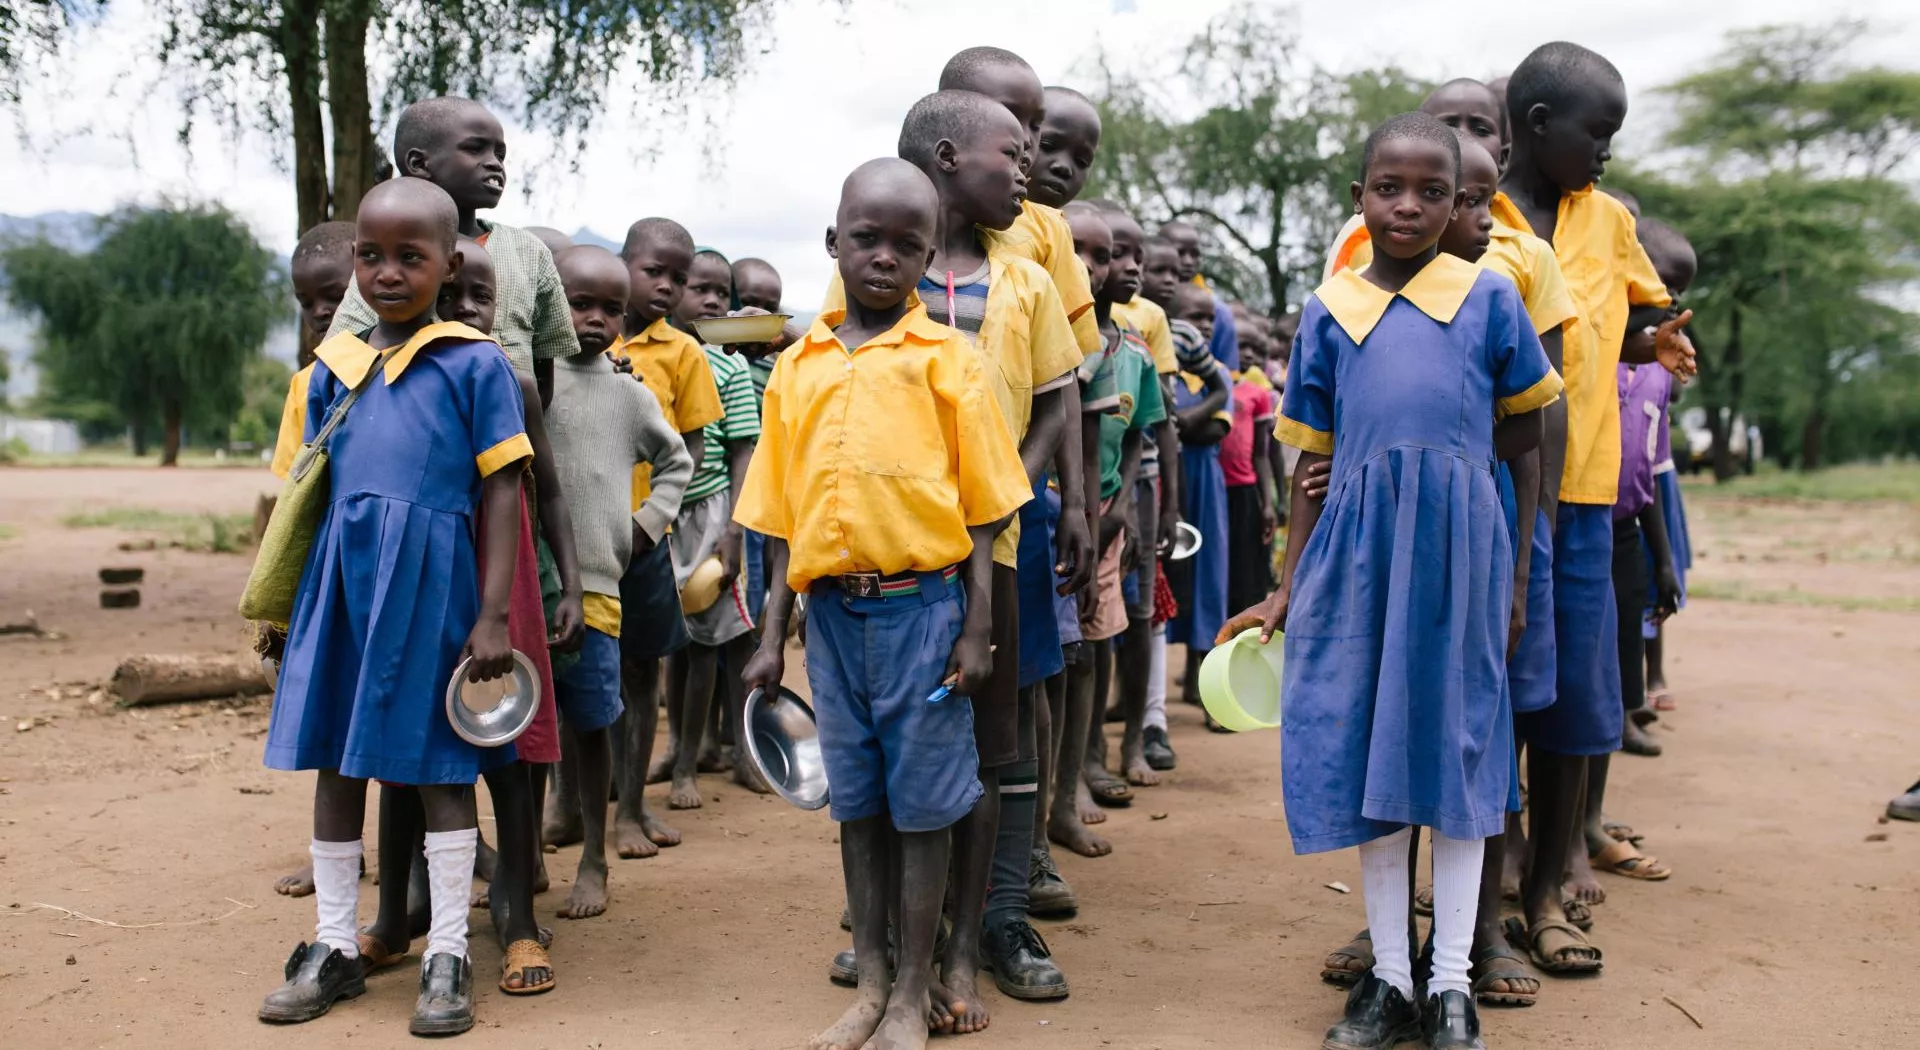 Kids go to school in Uganda